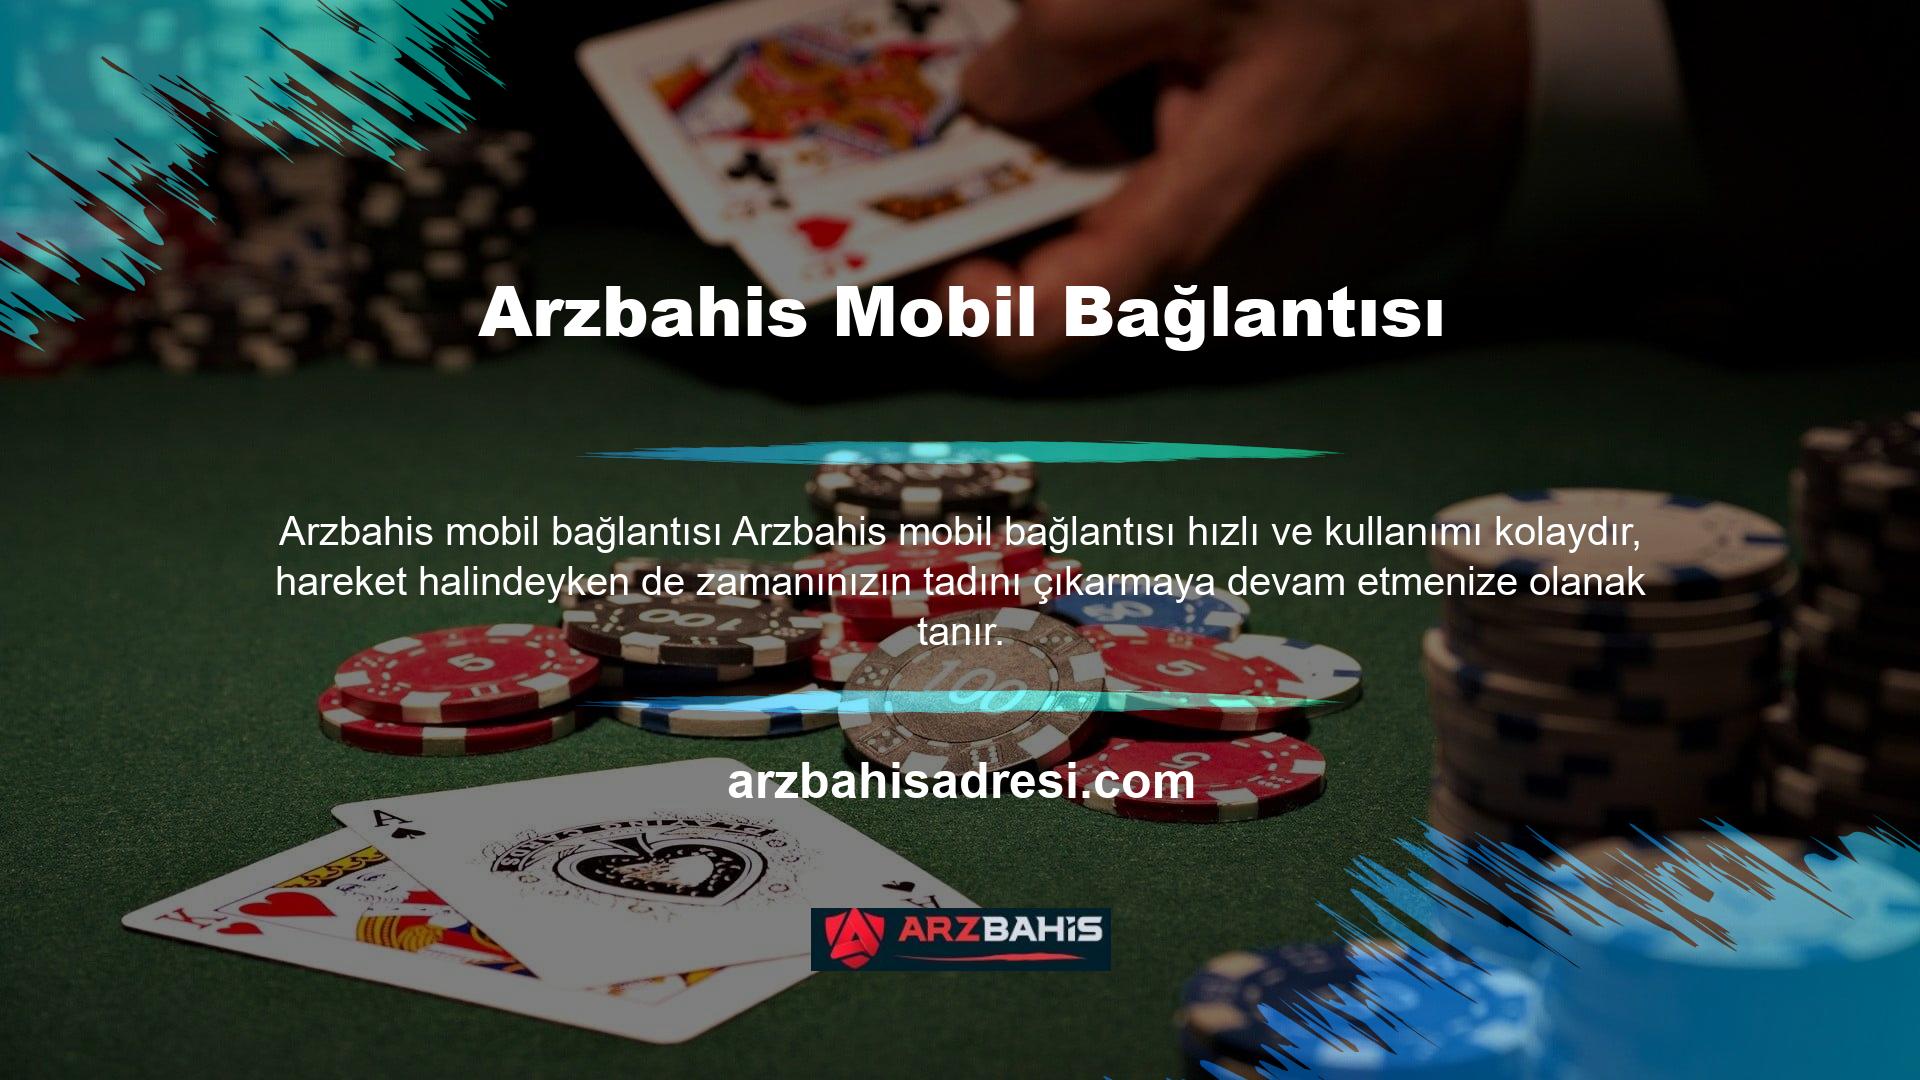 Kullanıcı sayısı yüksek olan dünyanın en popüler web sitelerinden biri Arzbahis